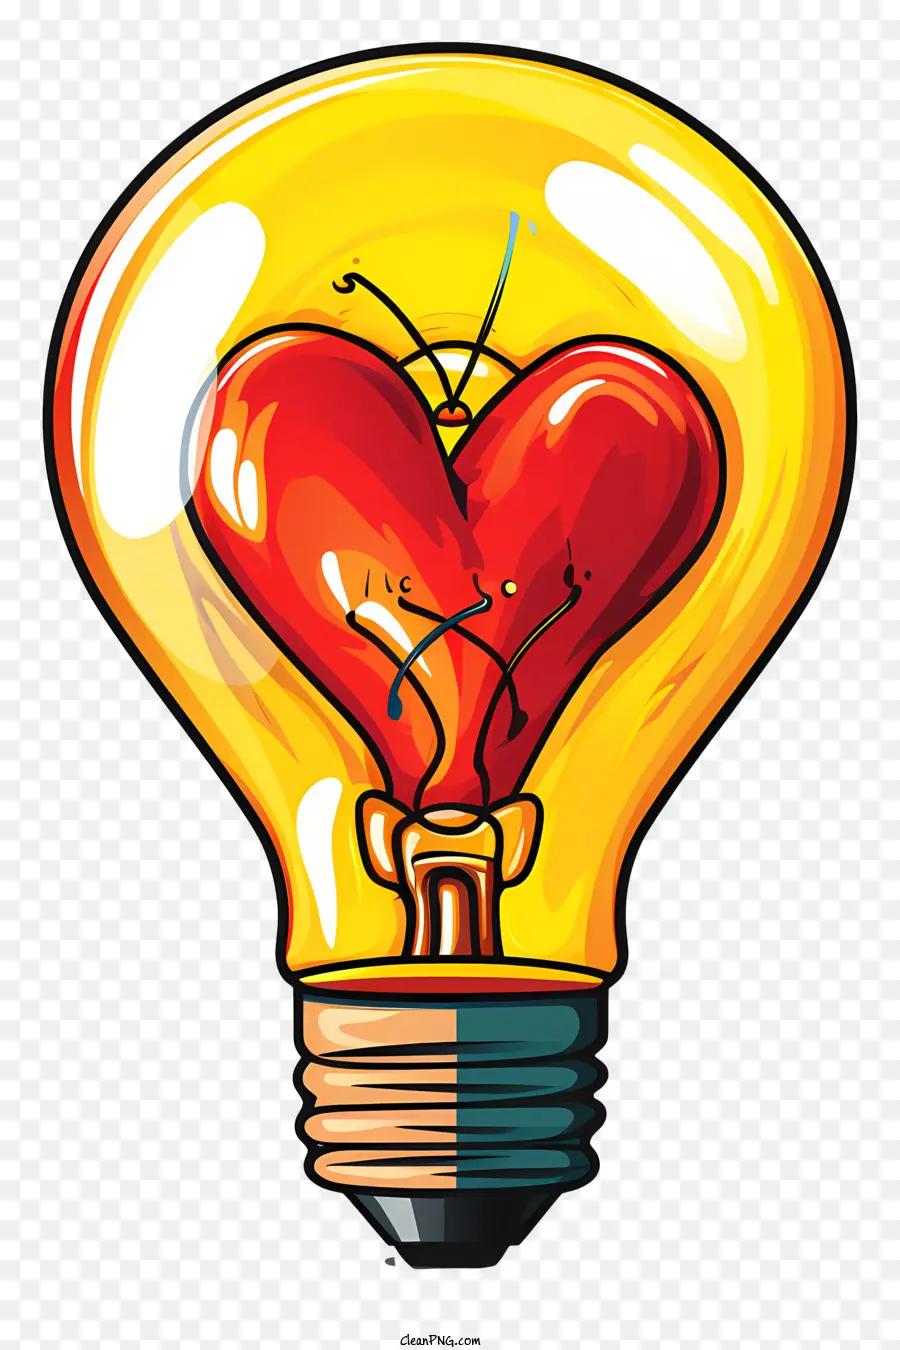 lampadina di lampadina con lampadina spezzata a cuore spezzato a forma di cuore a forma di lampadina rotta simbolo lampadina - Lampadina rotta con crepa a forma di cuore